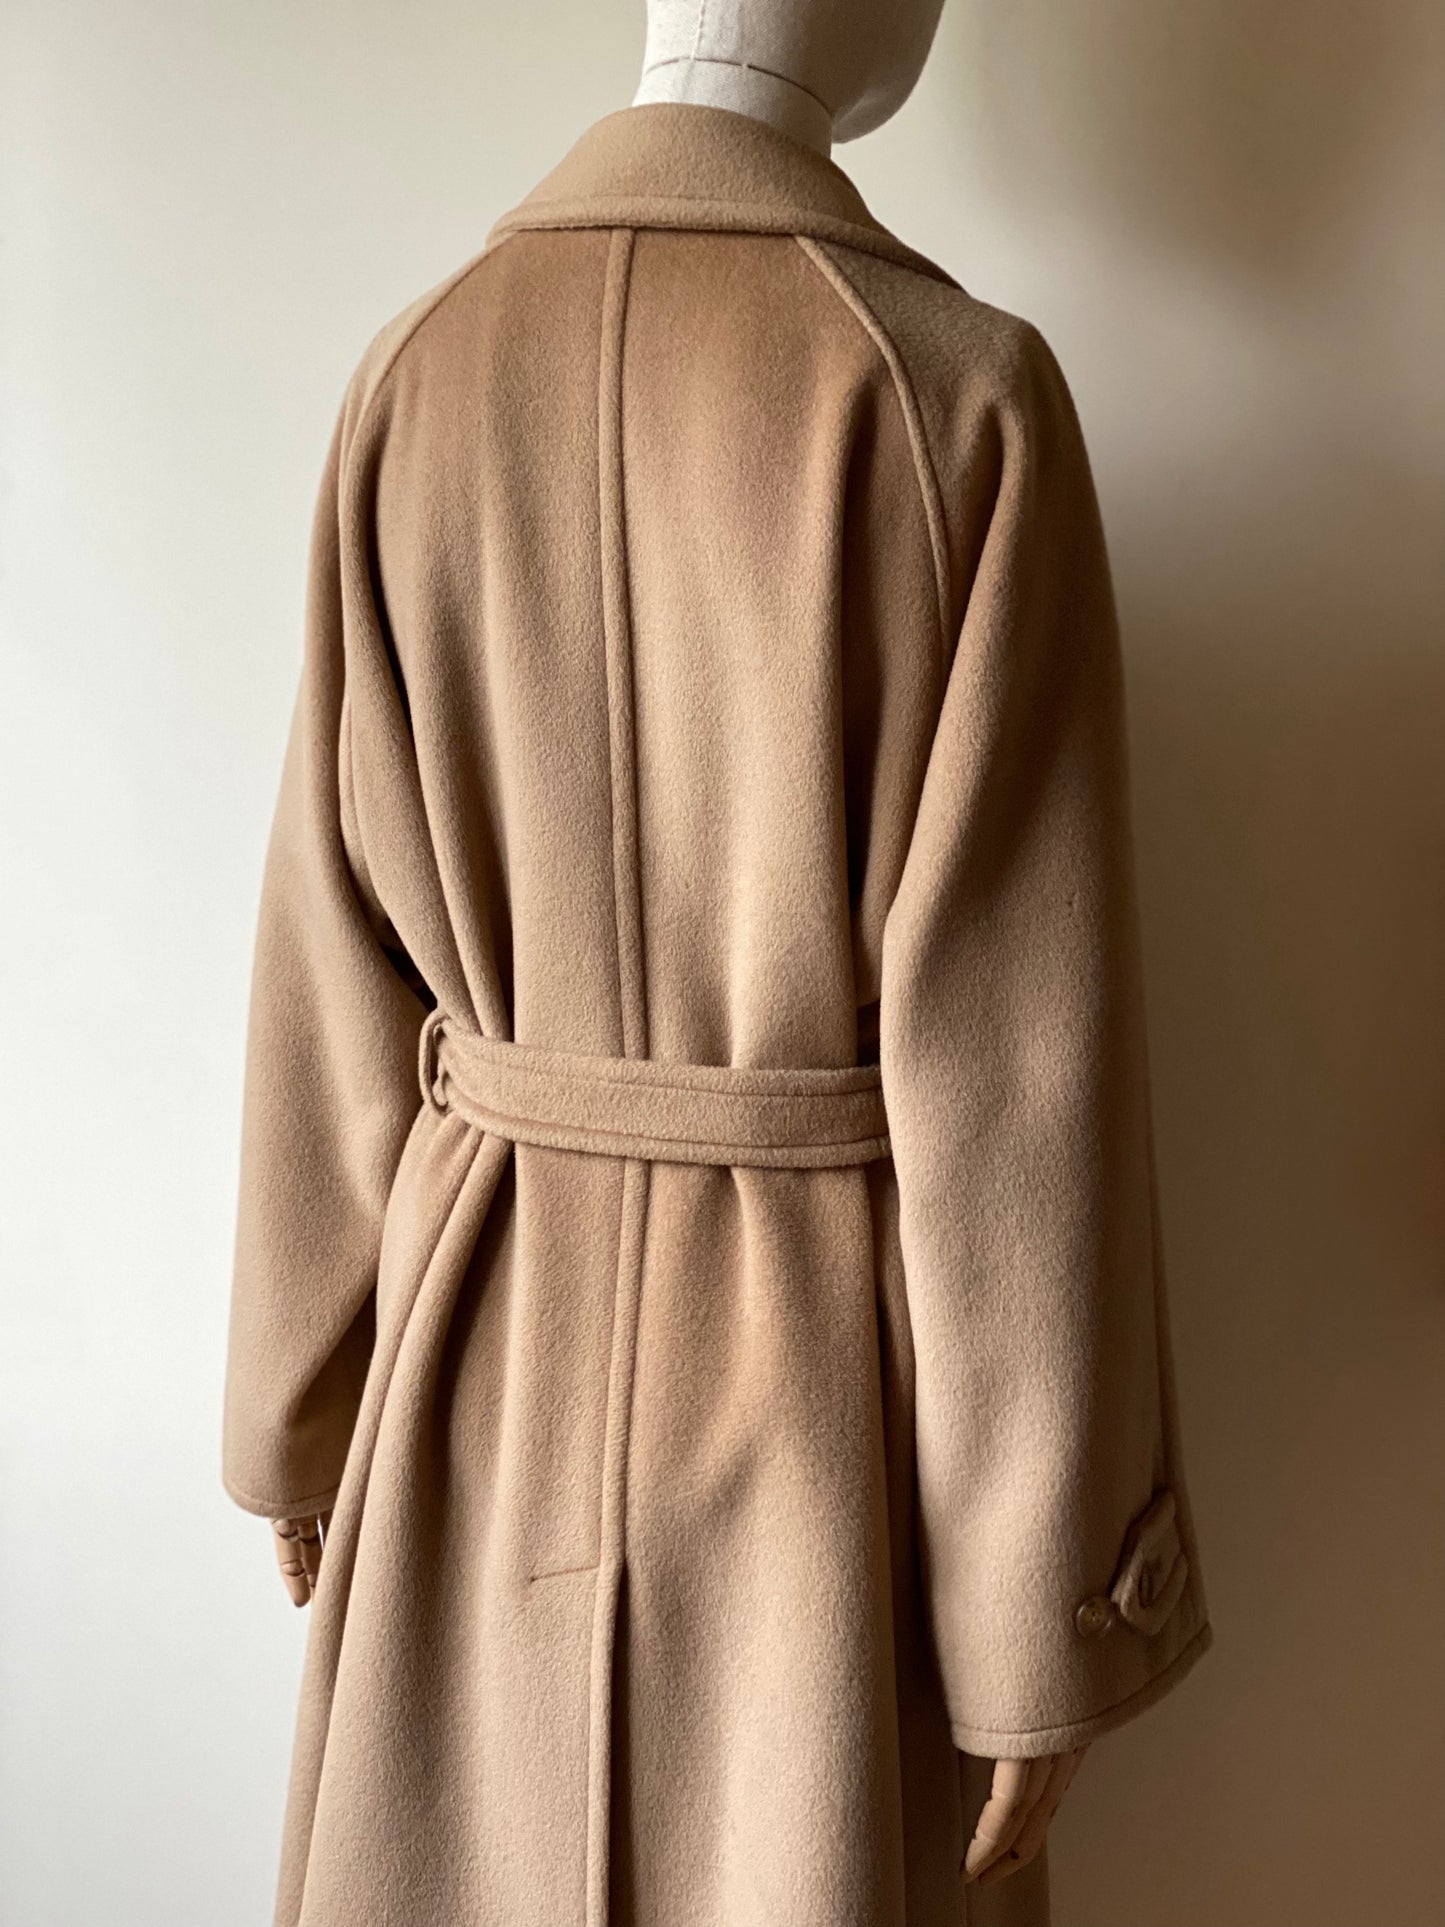 Max Mara Belted Camel Coat